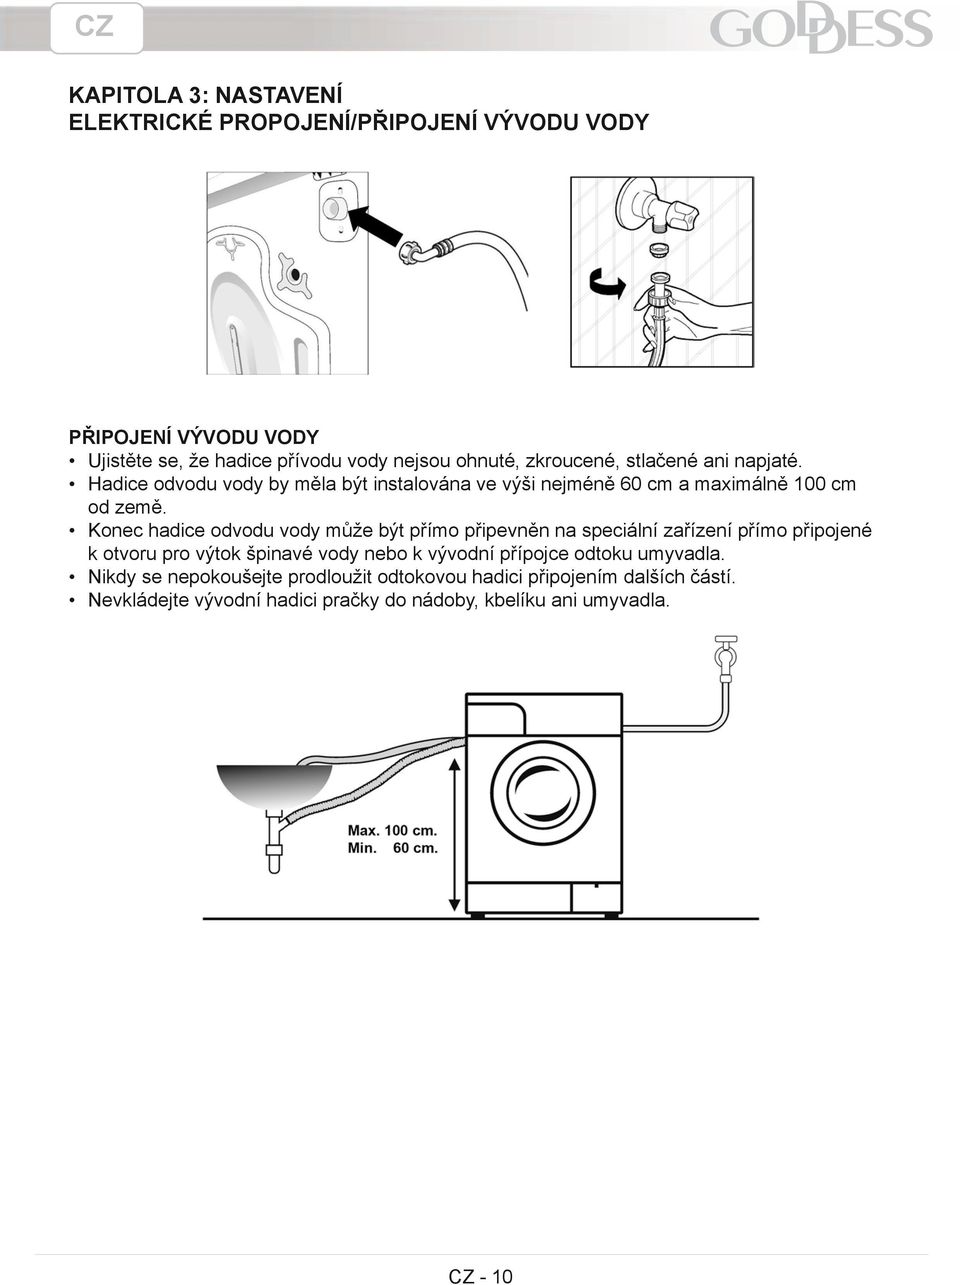 Konec hadice odvodu vody může být přímo připevněn na speciální zařízení přímo připojené k otvoru pro výtok špinavé vody nebo k vývodní přípojce